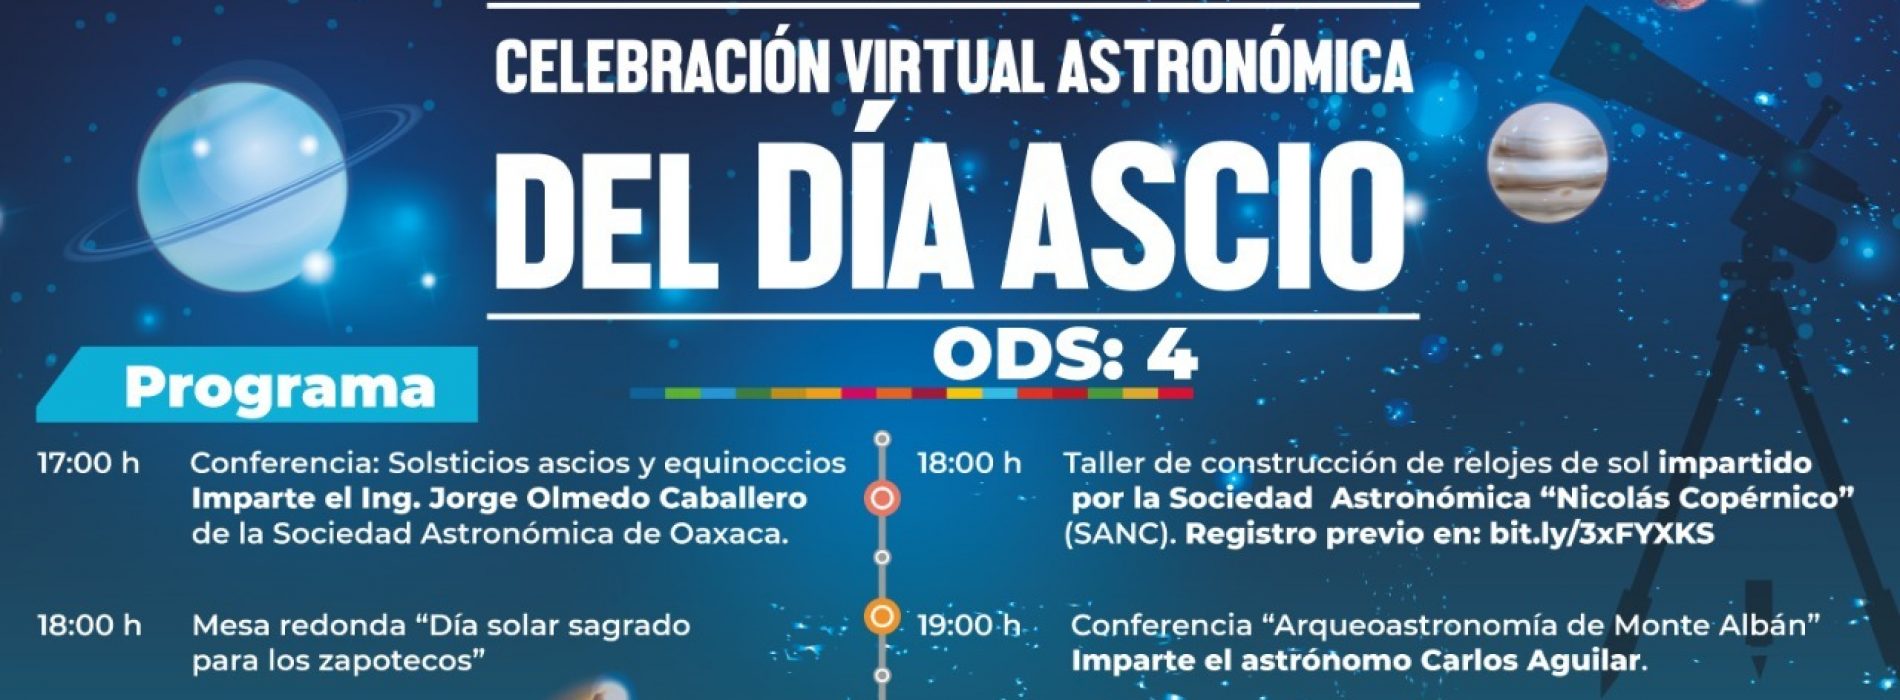 Conoce más sobre el Día Ascio con actividades virtuales que realizará el Ayuntamiento de Oaxaca